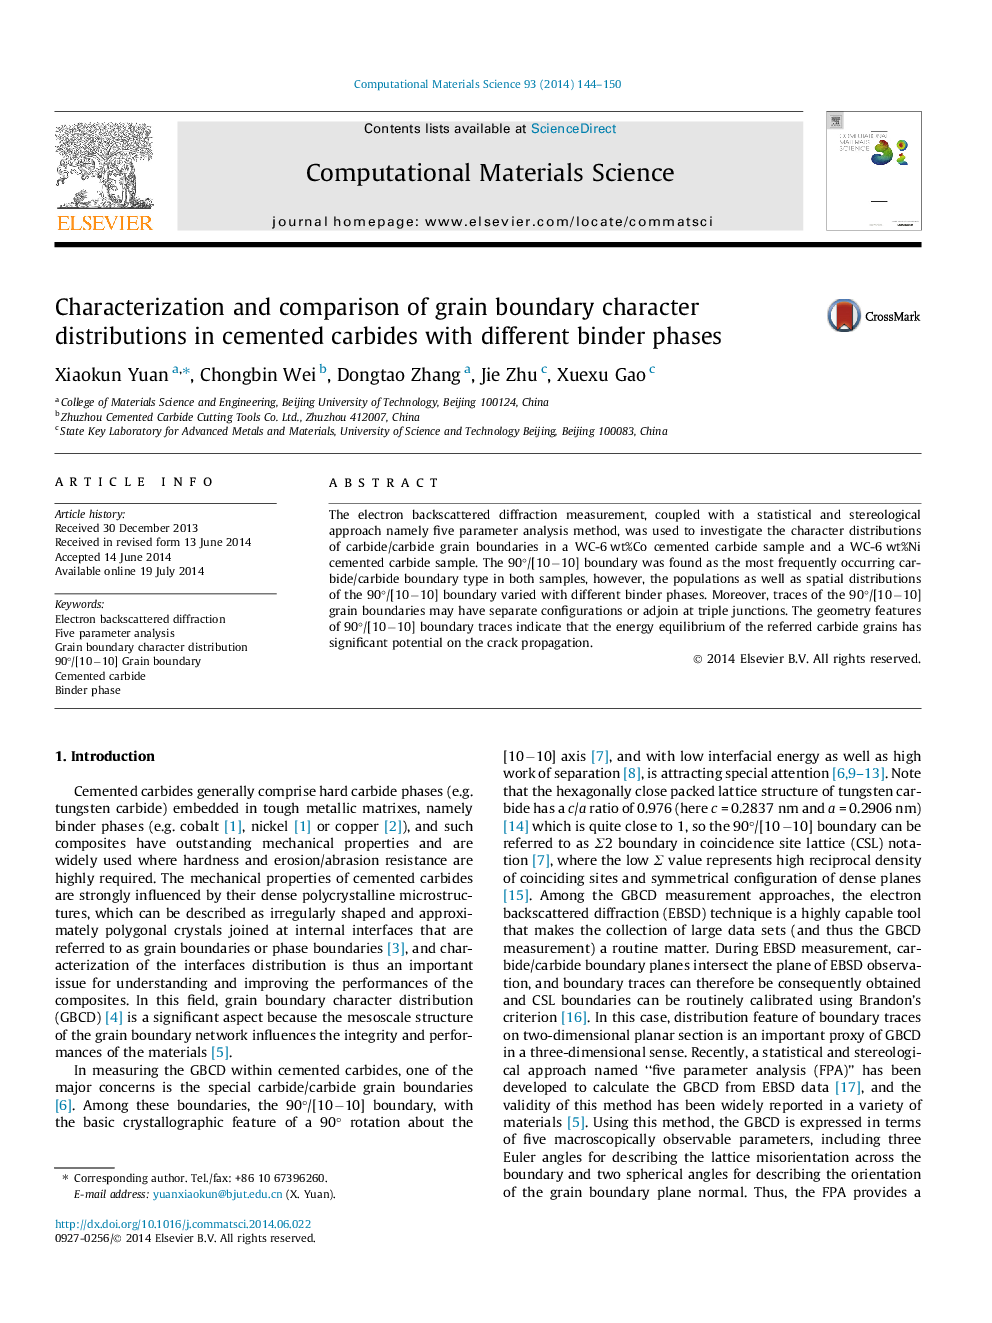 تعیین و مقایسه توزیع مرزهای دانه در کاربید های سرامیکی با فازهای مختلف اتصال دهنده 